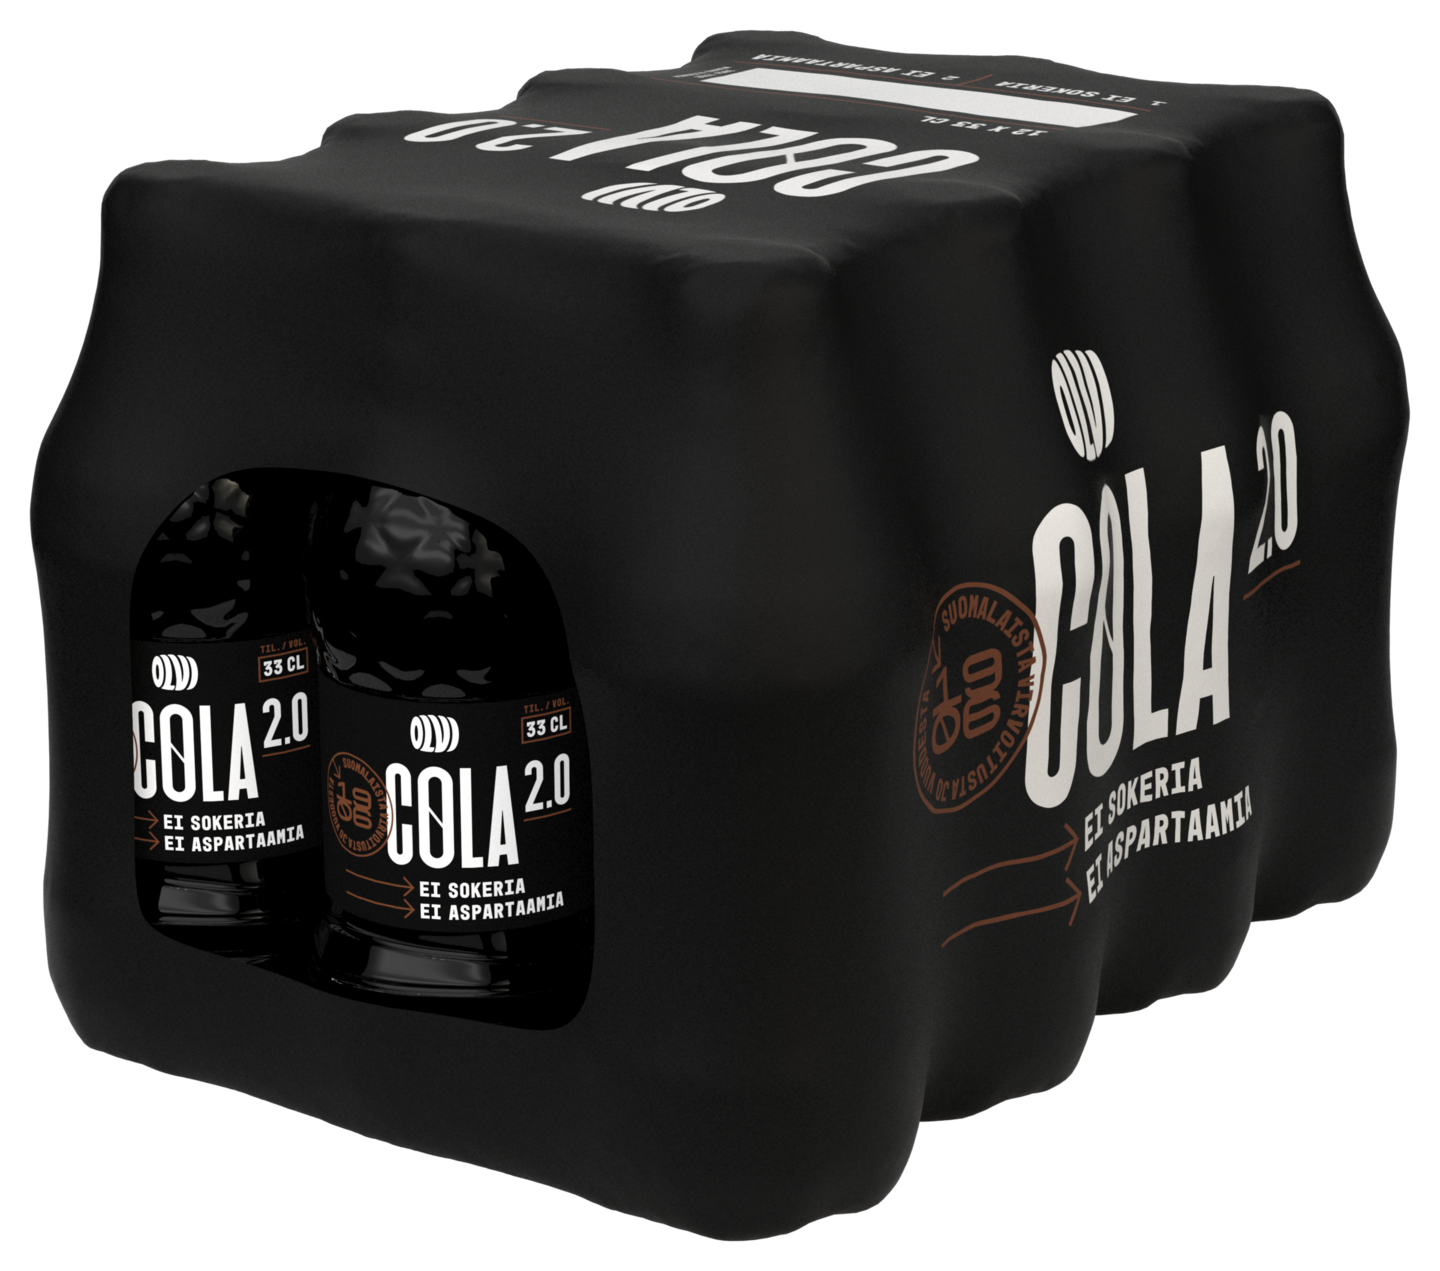 Olvi Cola 2.0 sokeriton virvoitusjuoma 0,33l 12-pack